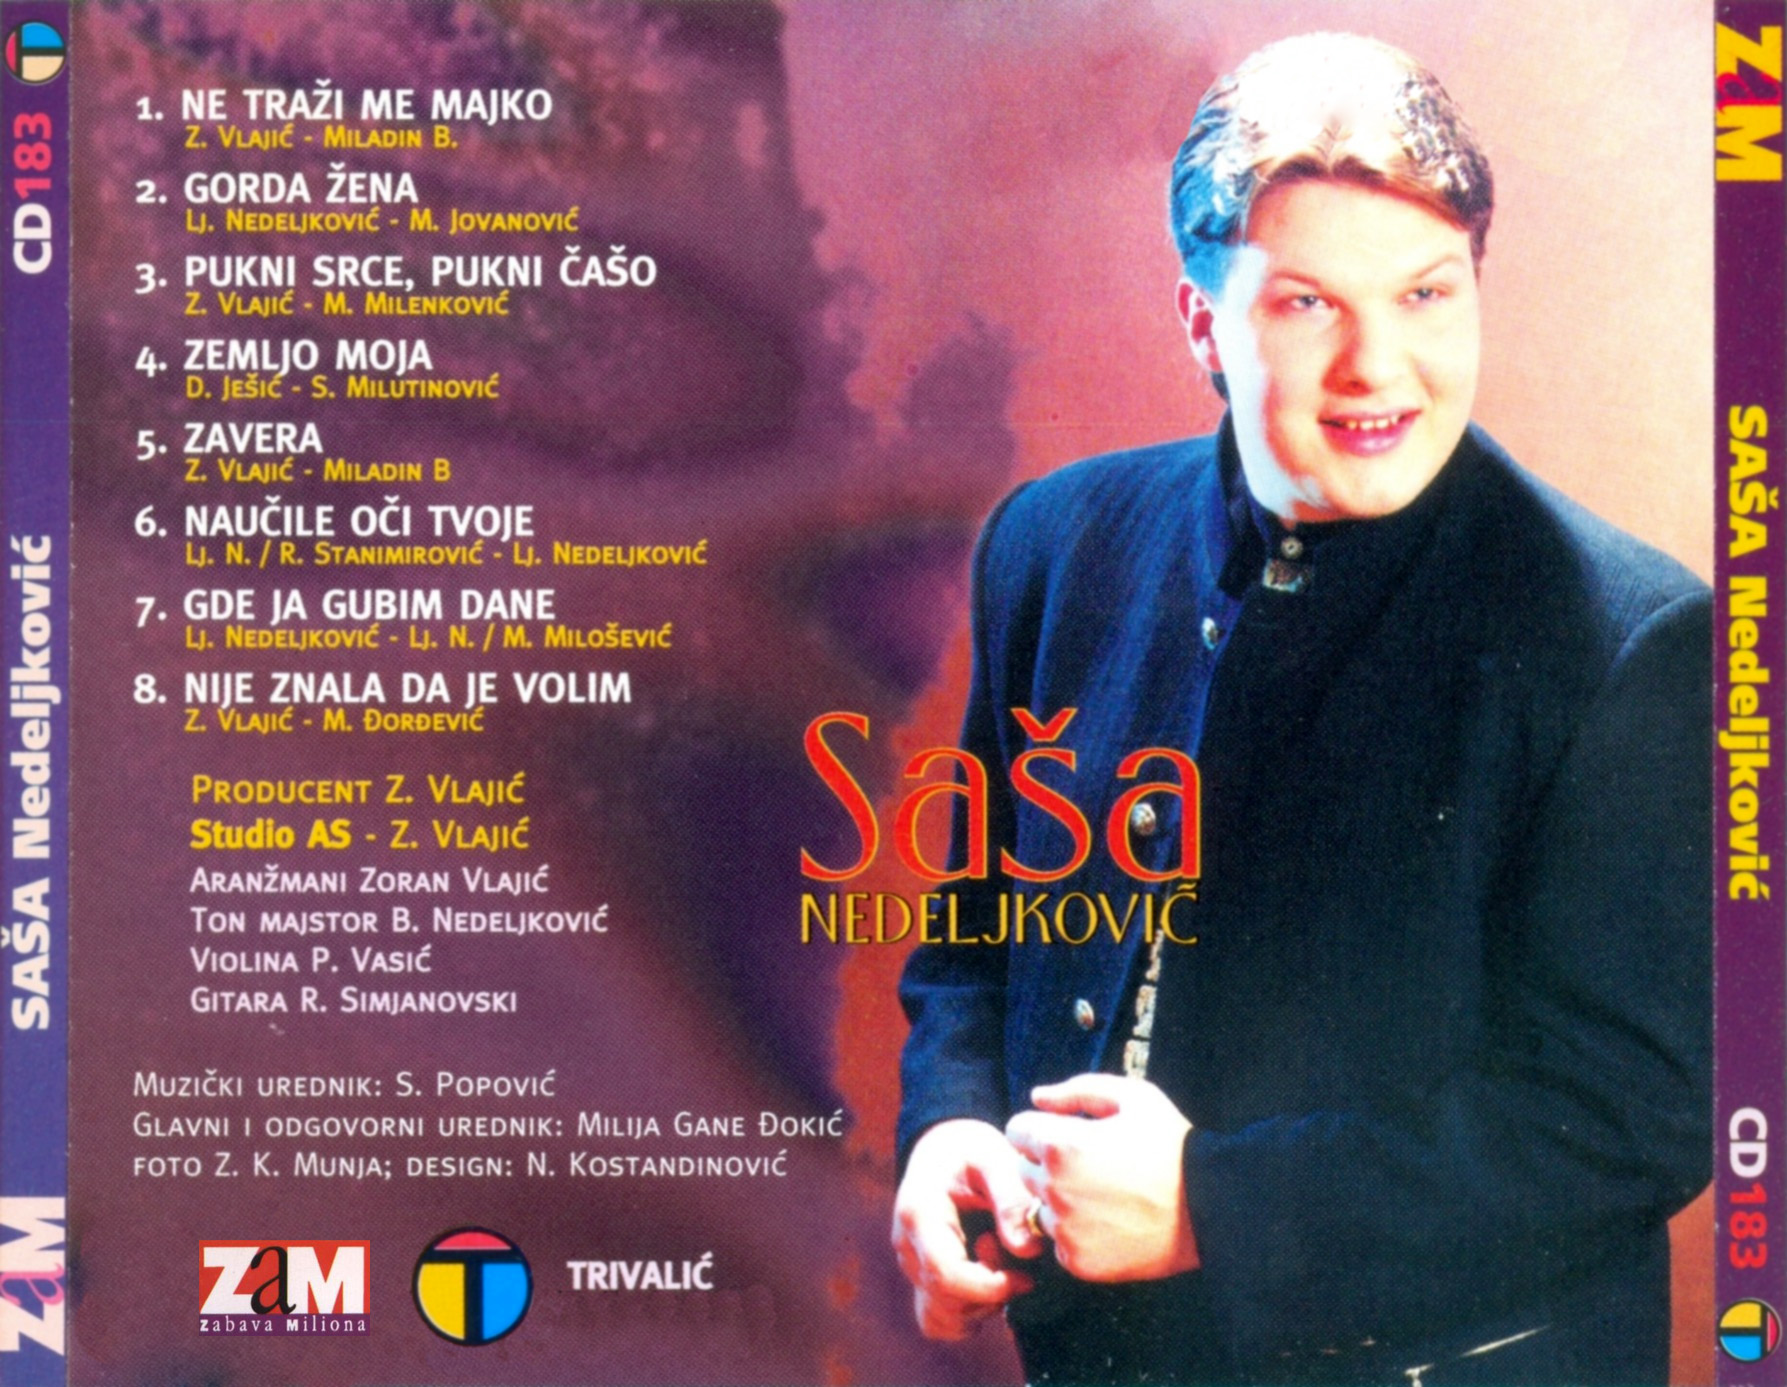 Sasa Nedeljkovic 1997 zadnja